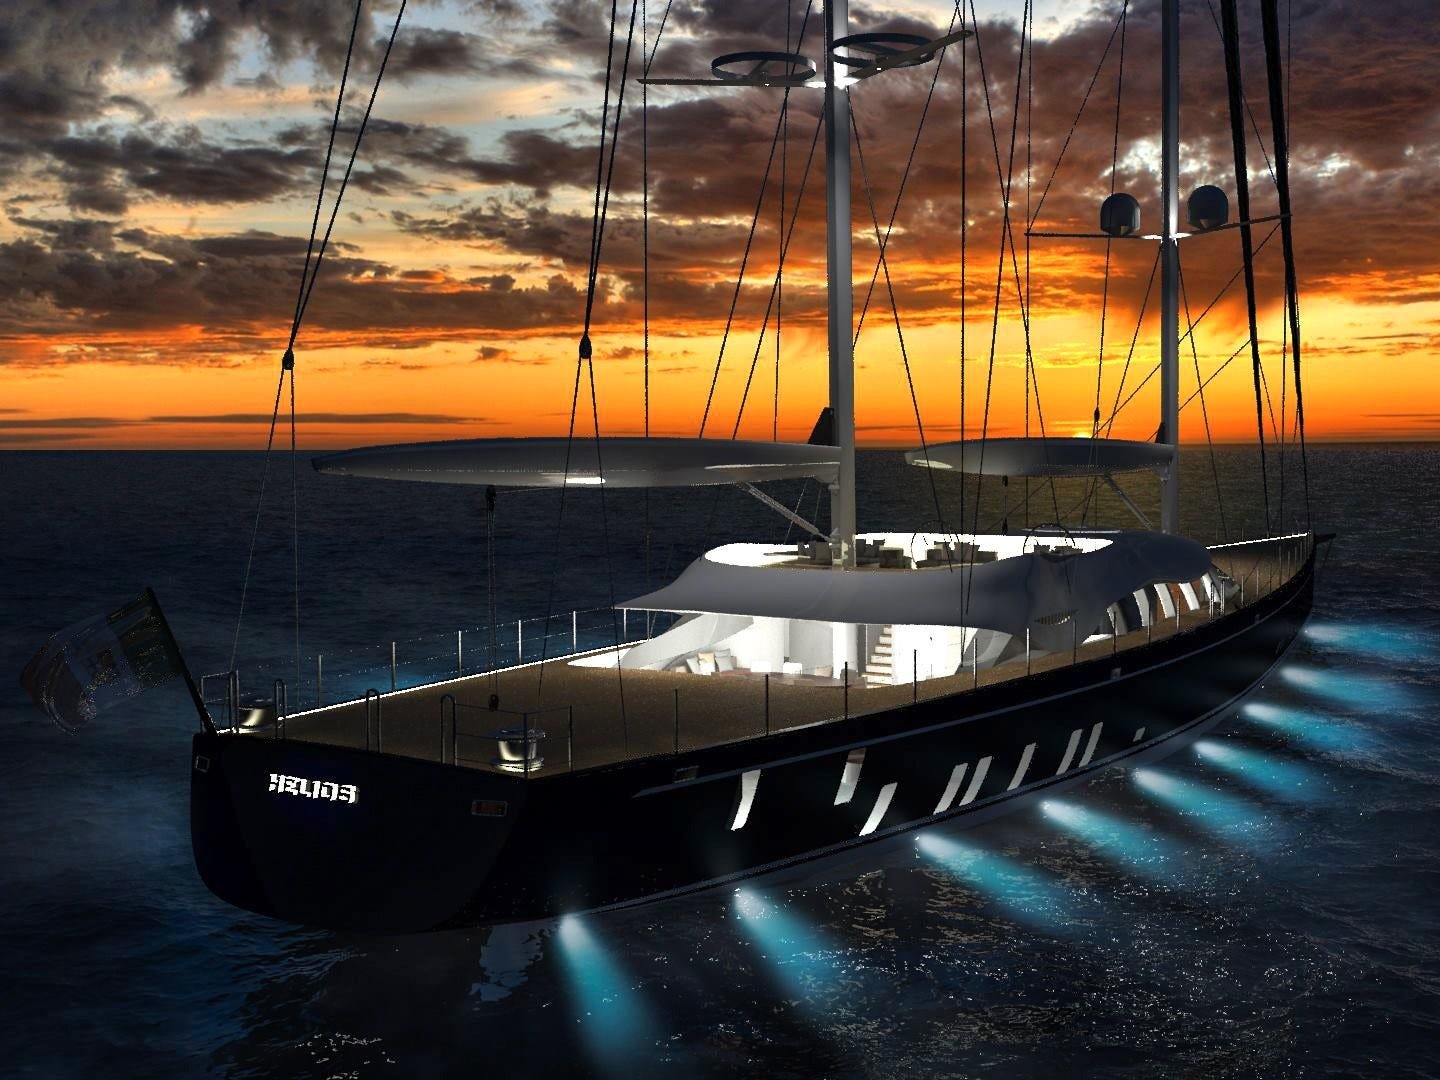 Solar sailing. Яхта Helios. Солнечной яхты «Helios». Парусные яхты будущего. Яхта на солнечных батареях.